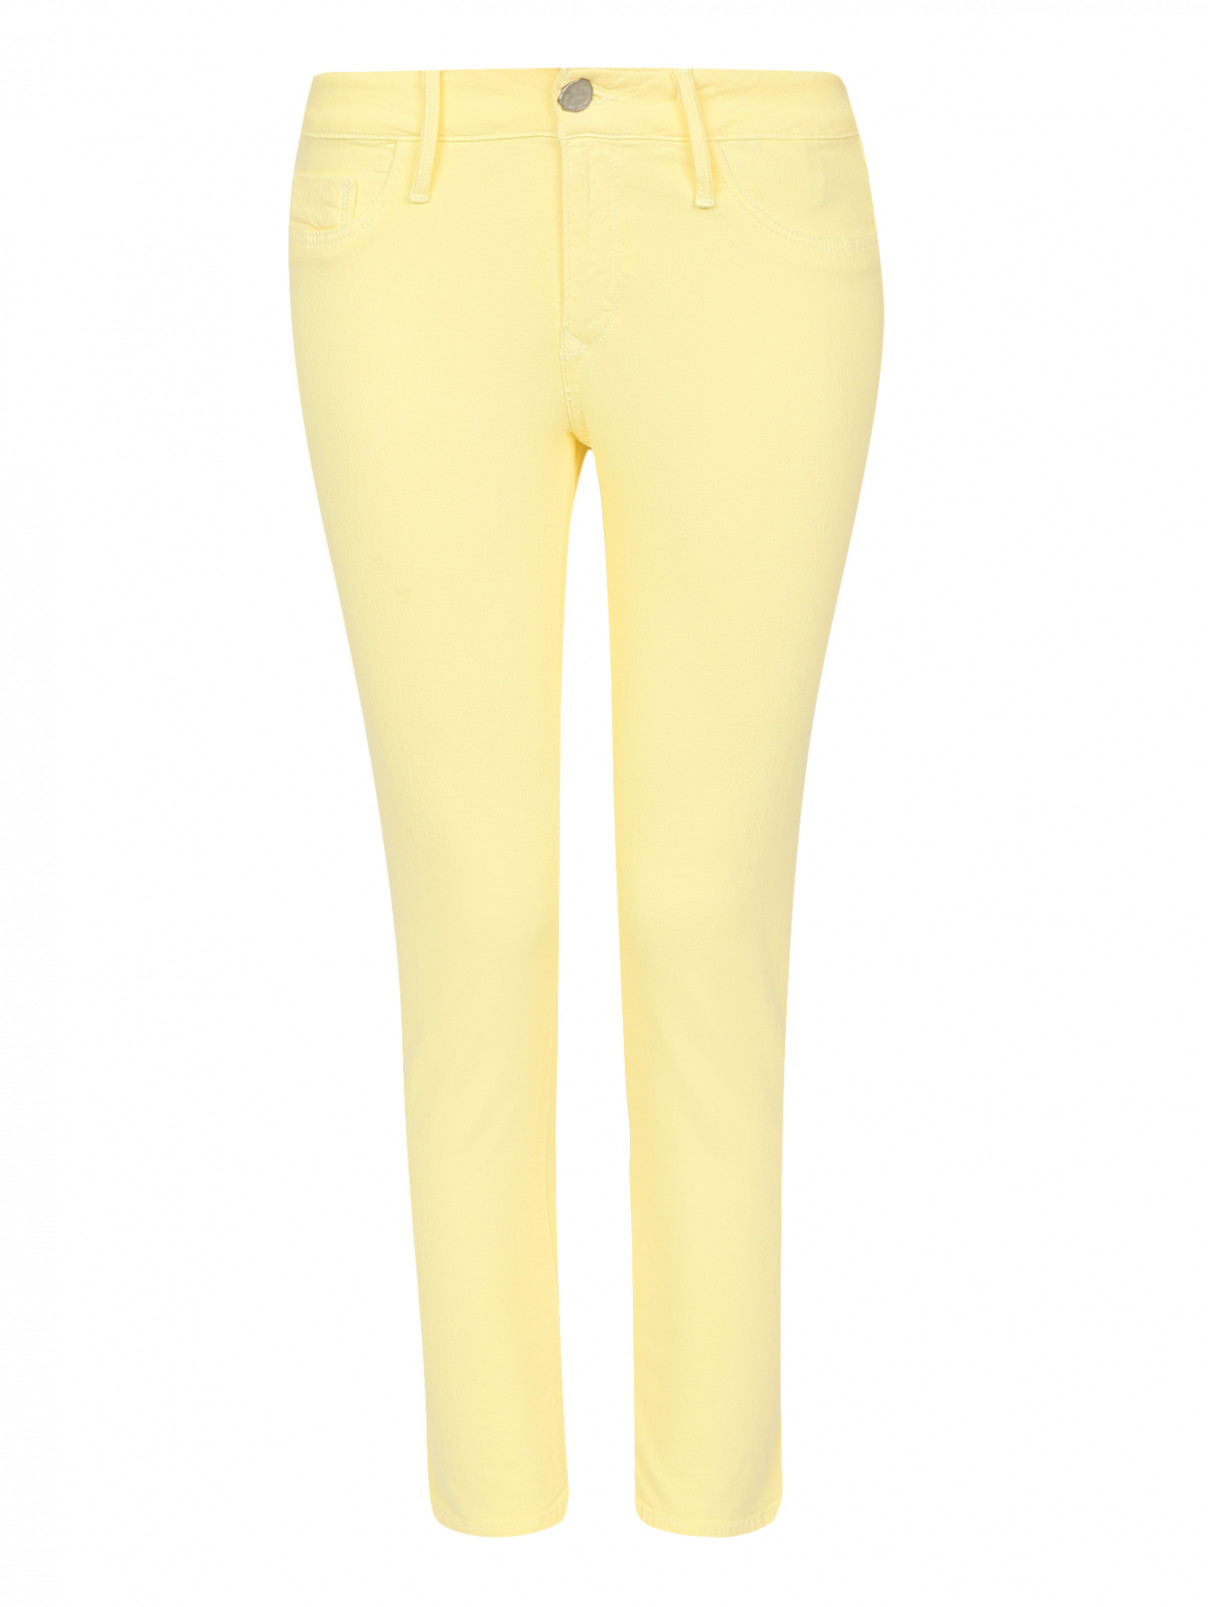 Укороченные джинсы узкого кроя Black Orchid  –  Общий вид  – Цвет:  Желтый